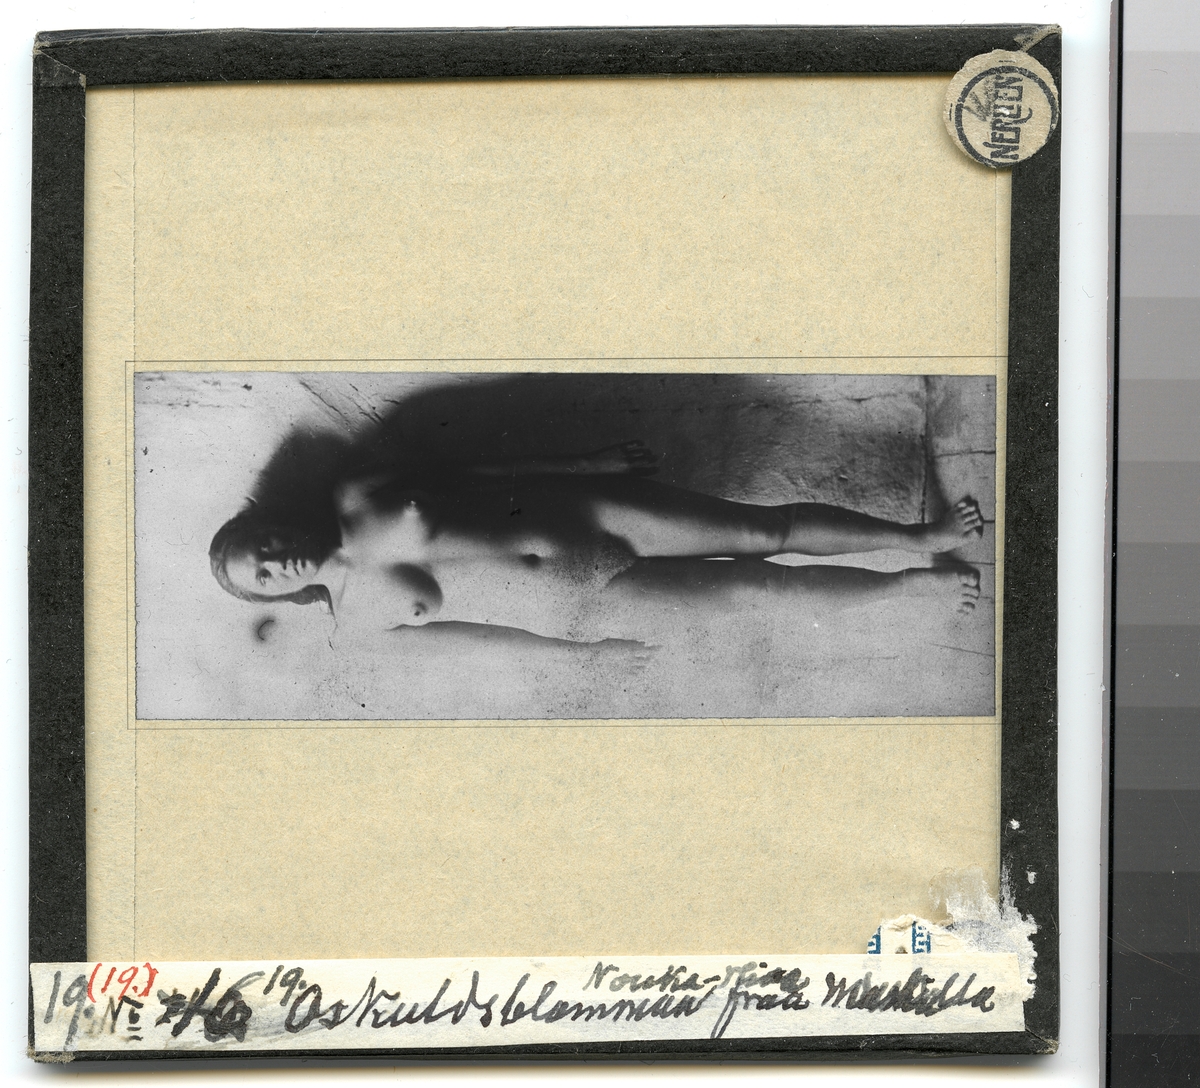 Bilden föreställer ett porträtt av en naken flicka framifrån. Enligt Etnografiska museets bildinformation heter hon Akata (född 1865-70).